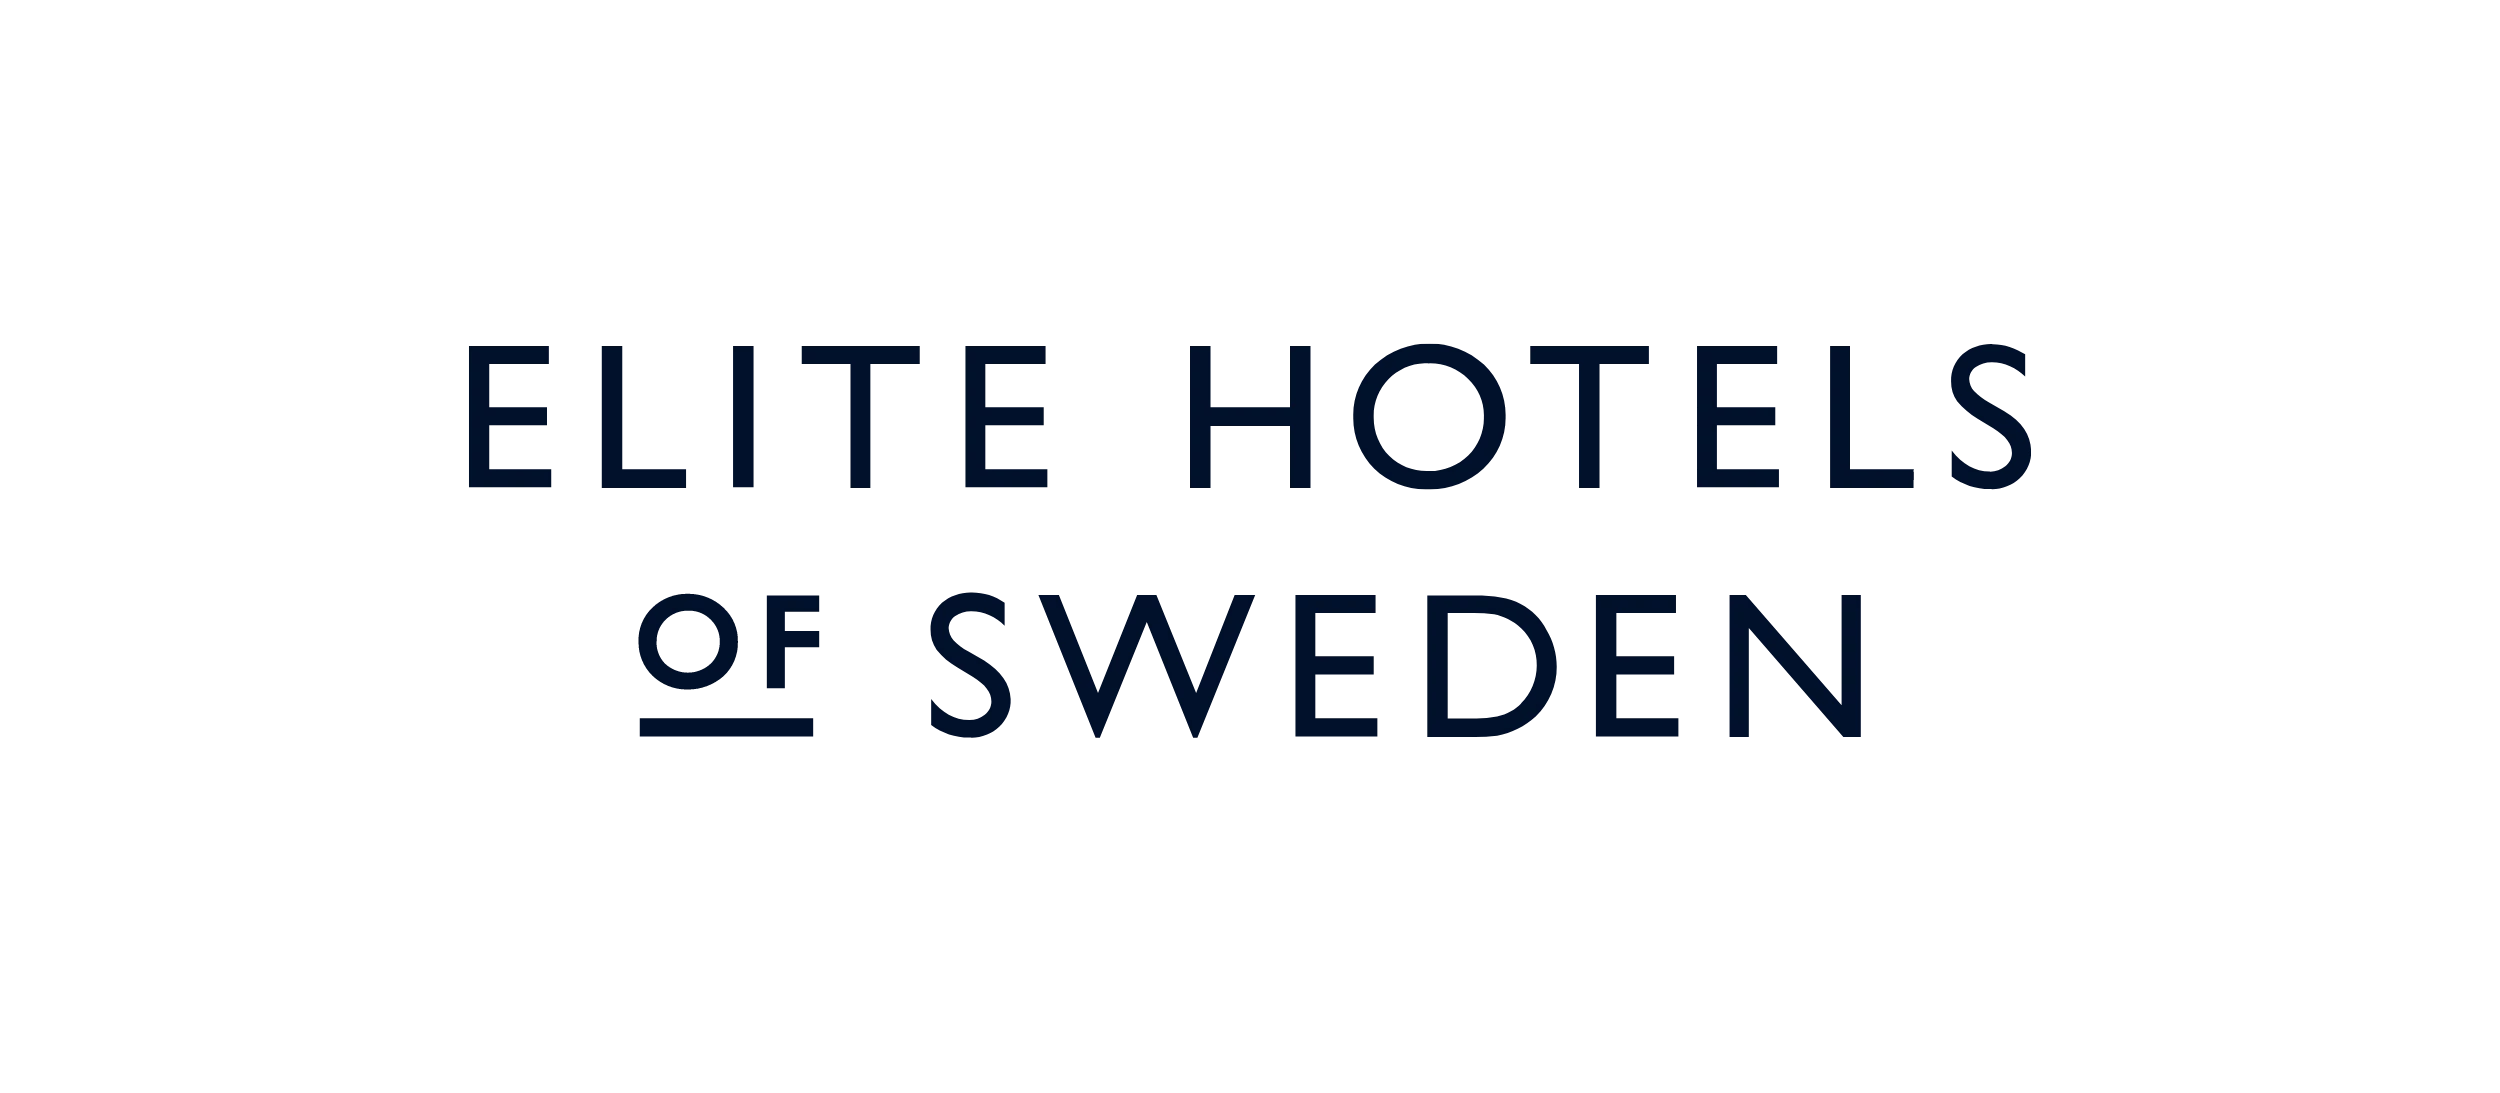 Elite hotels of sweden vælger Adyen